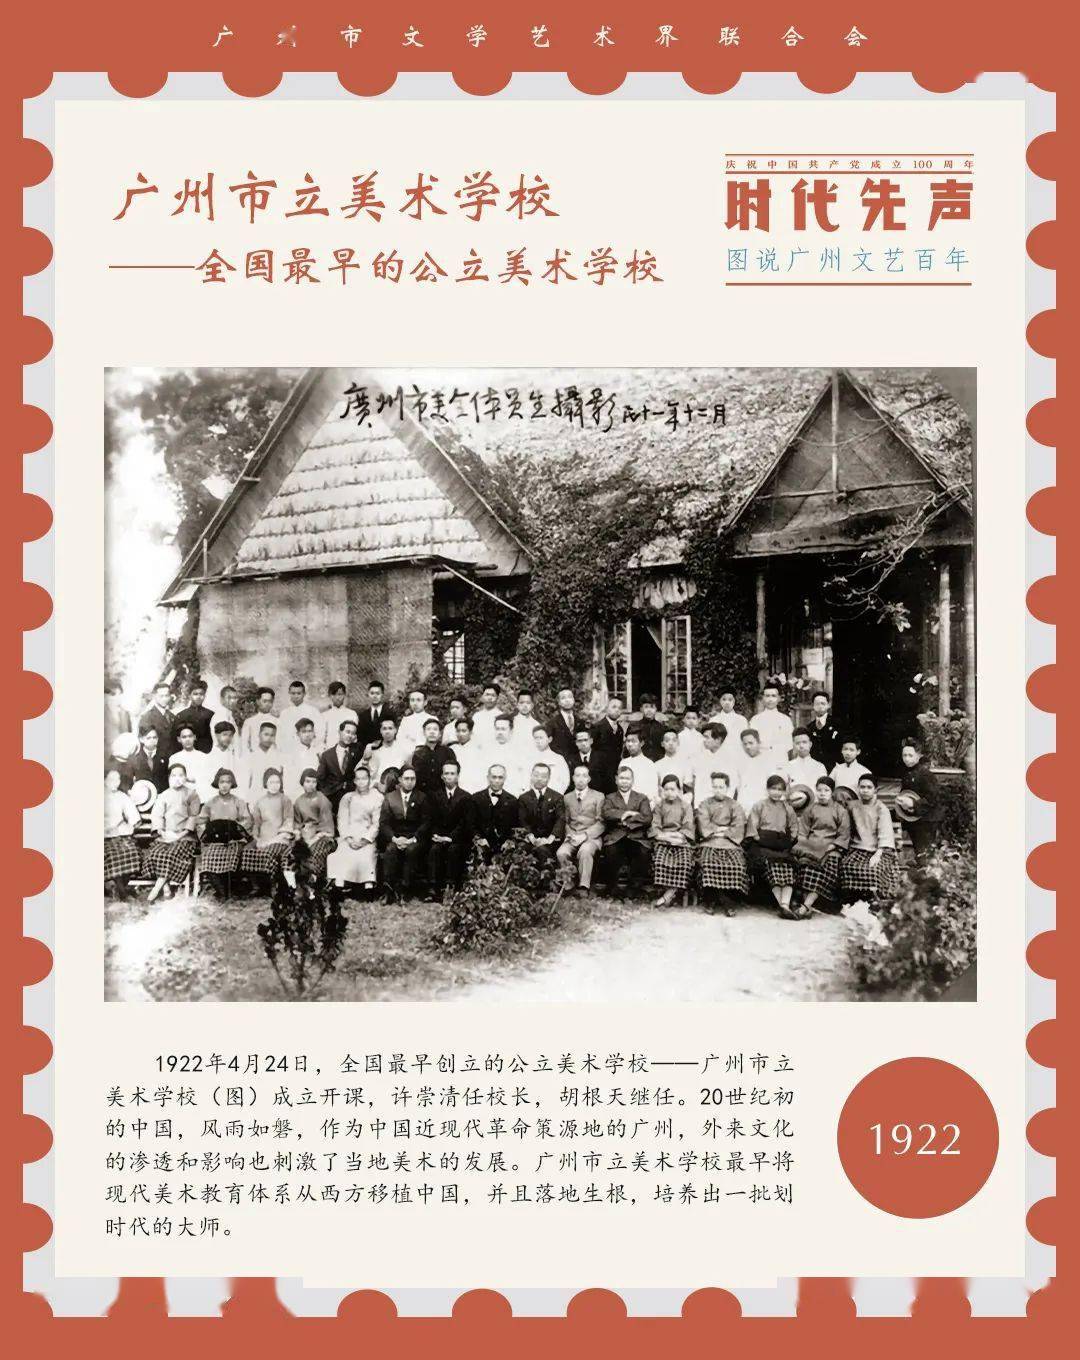 百年百图丨广州市立美术学校全国最早的公立美术学校1922